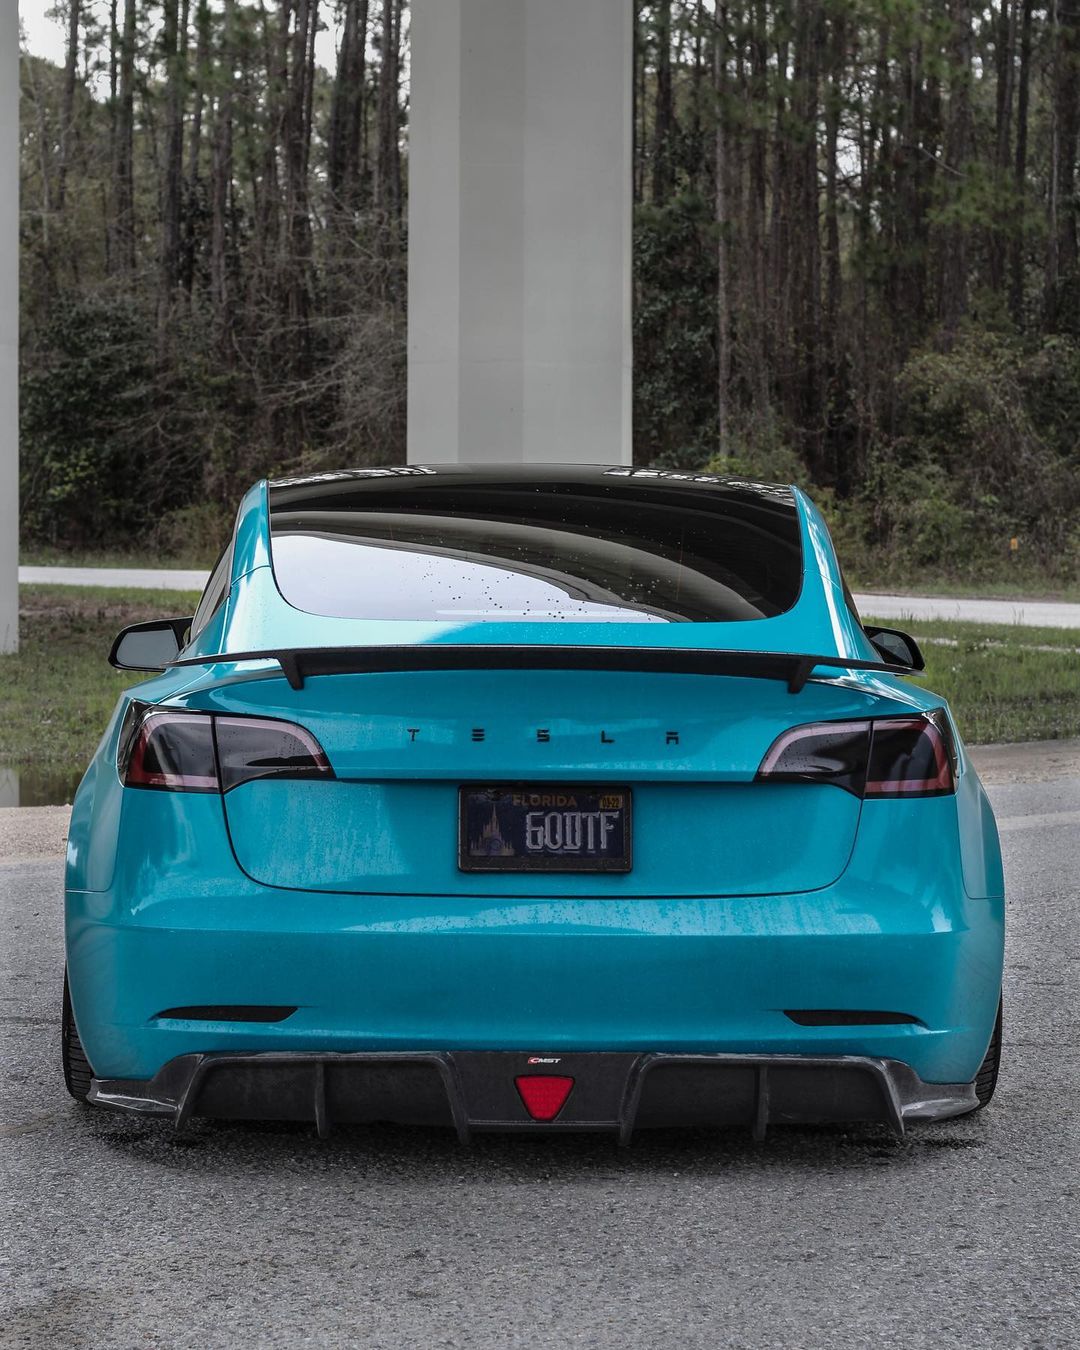 New Release!!! CMST Tesla Model 3 Carbon Fiber Full Body Kit Style E